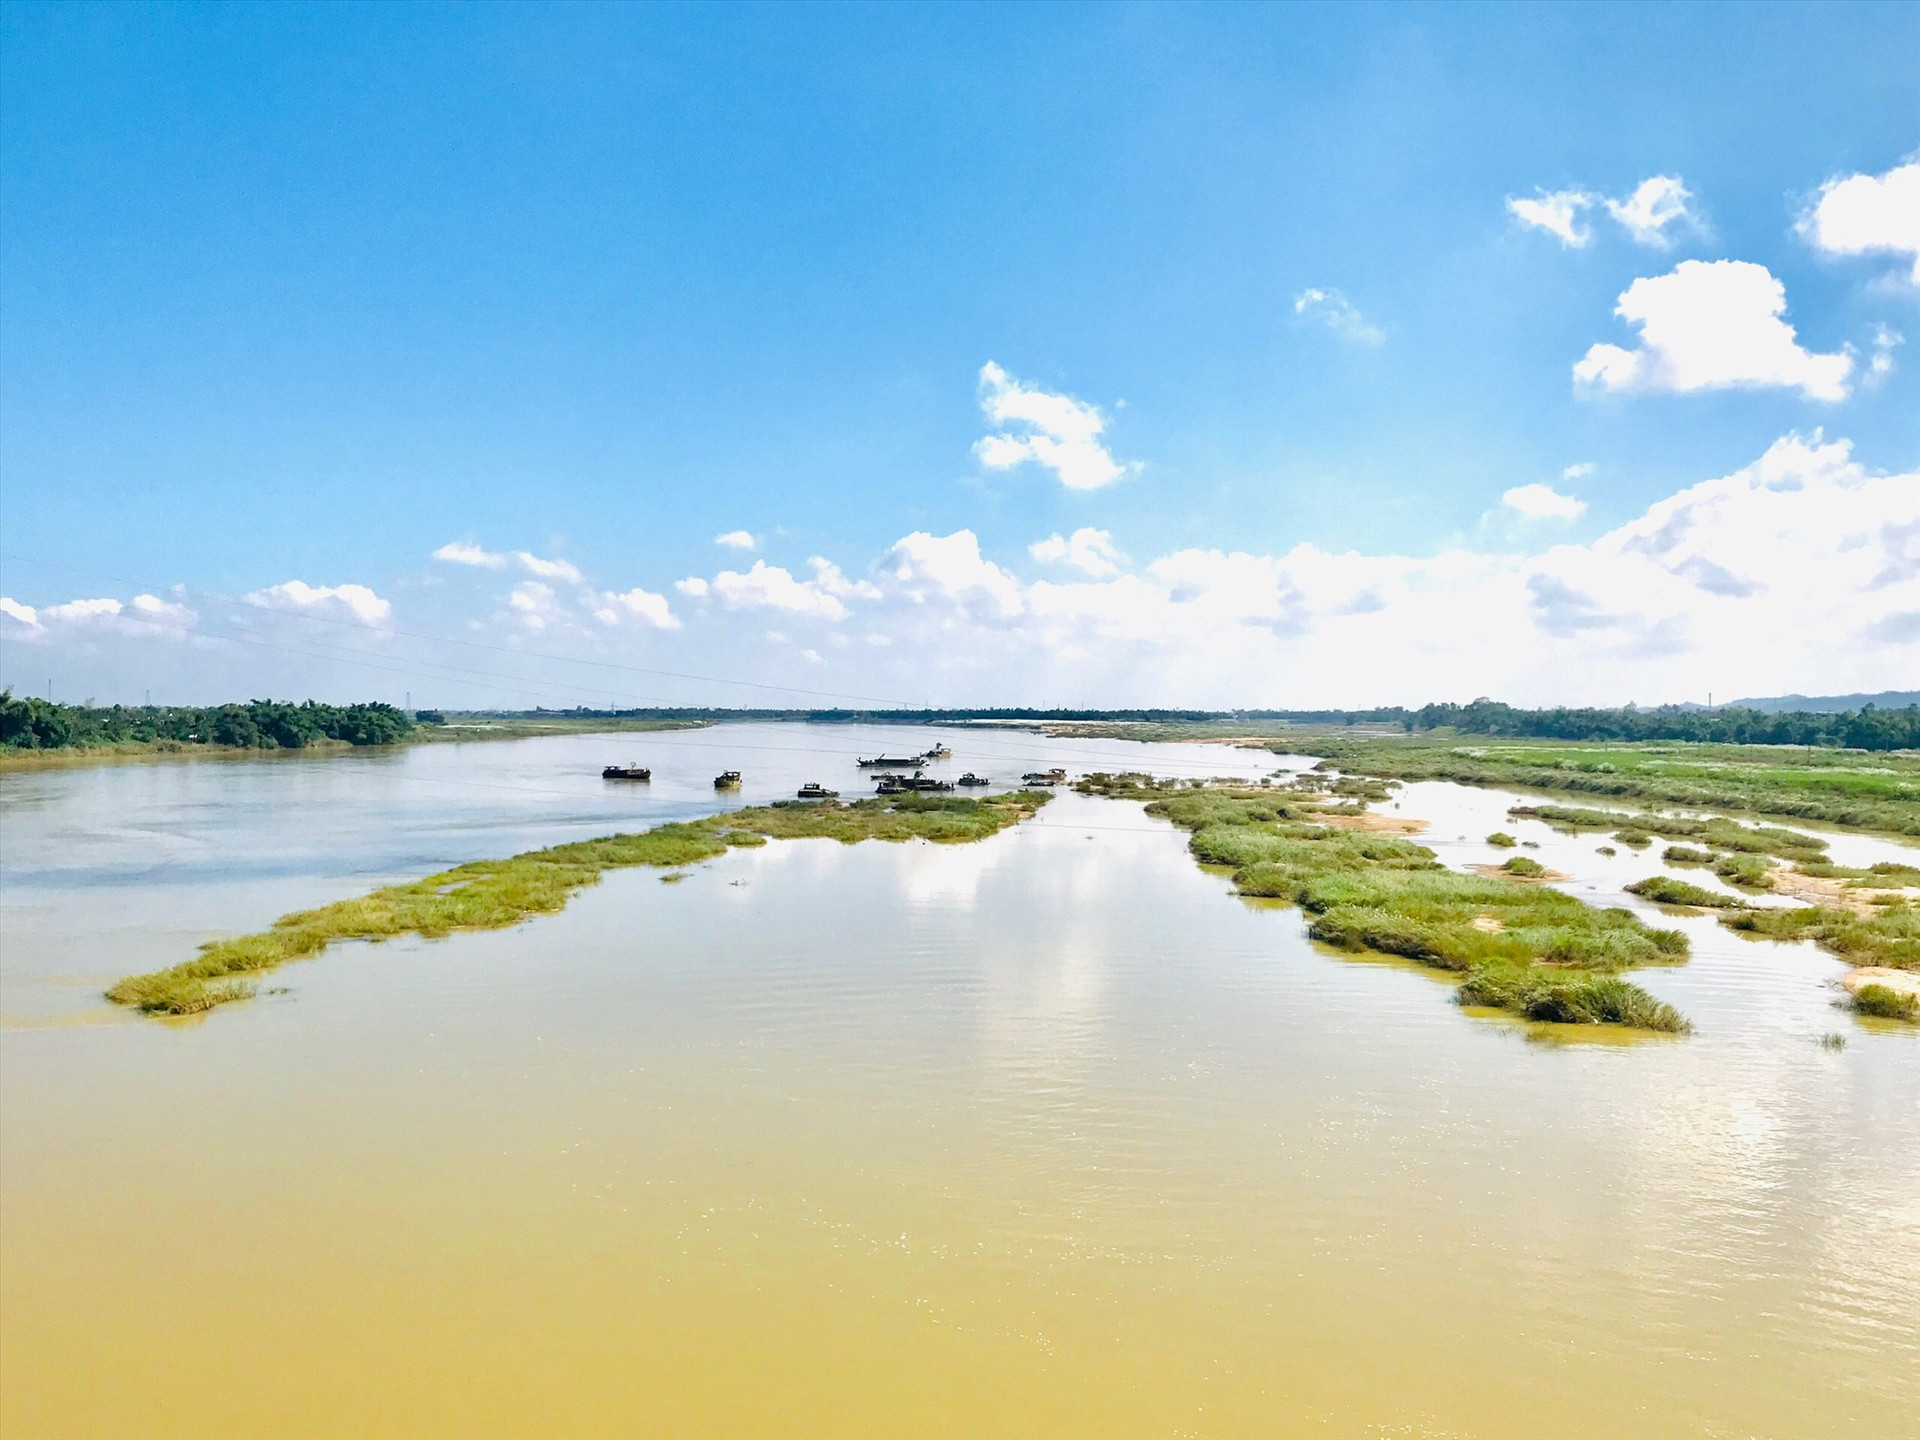 Hệ thống cồn bãi trên sông Thu Bồn cũng chịu tác động mạnh của diễn biến xói lở. Ảnh: Q.T